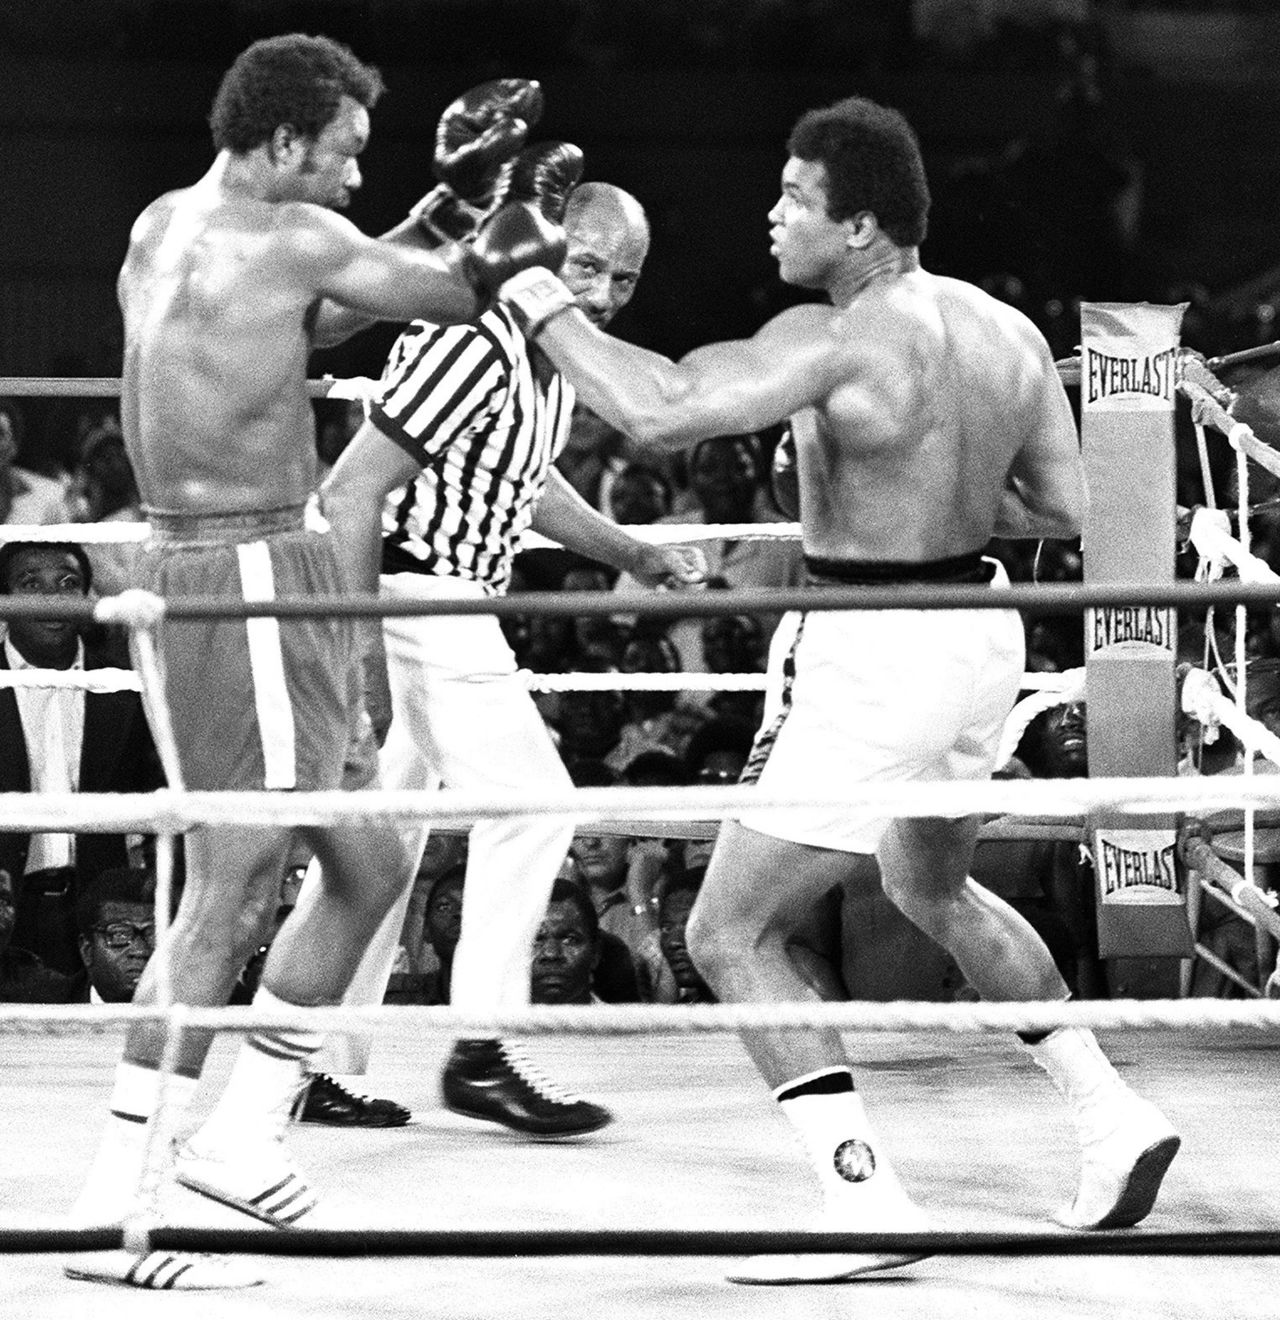 En 1974, Alí participó en una de las más famosas peleas de campeonato mundial en la historia del boxeo. Se enfrentó al campeón George Foreman en Zaire, en una pelea que fue llamada "Rumble in the Jungle". Alí salió victorioso tras noquear a Foreman en el octavo asalto.